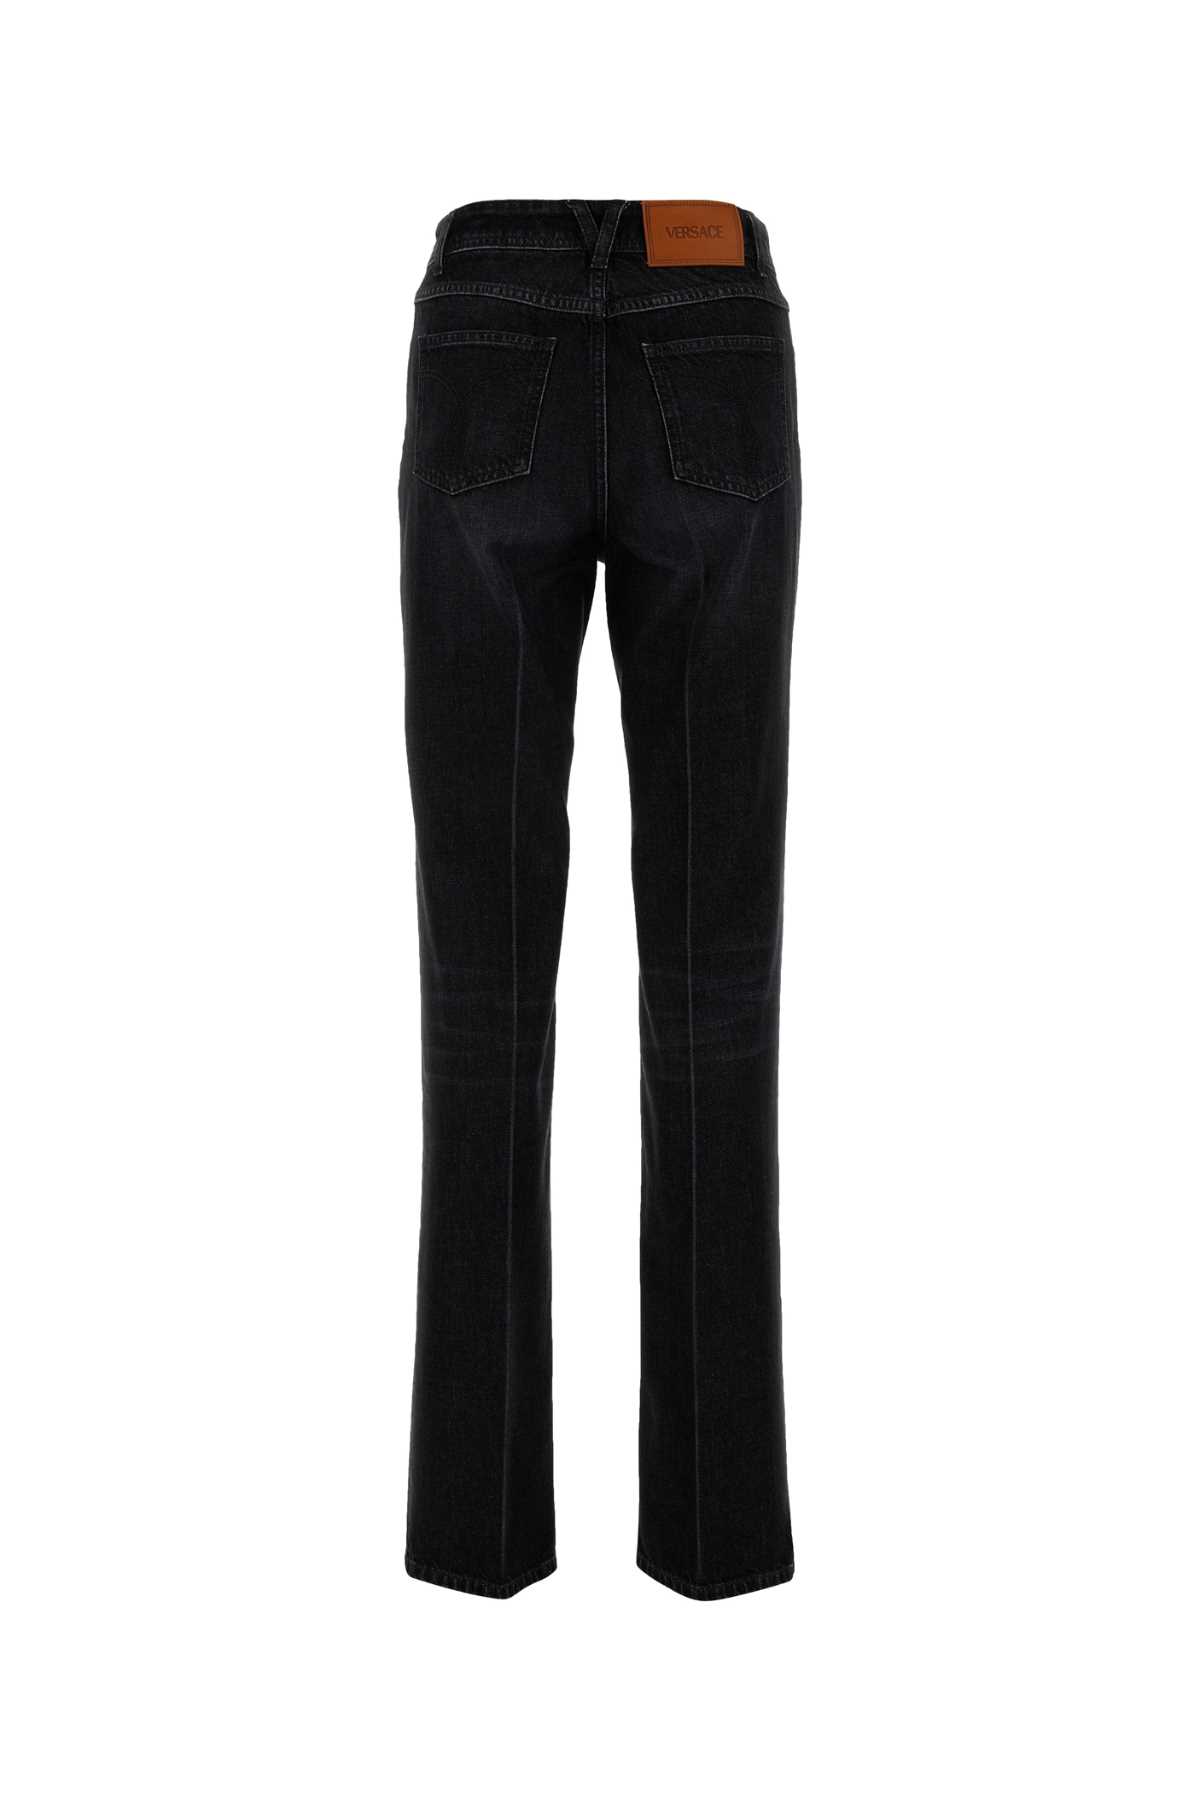 Versace Black Denim Jeans In Midgrey